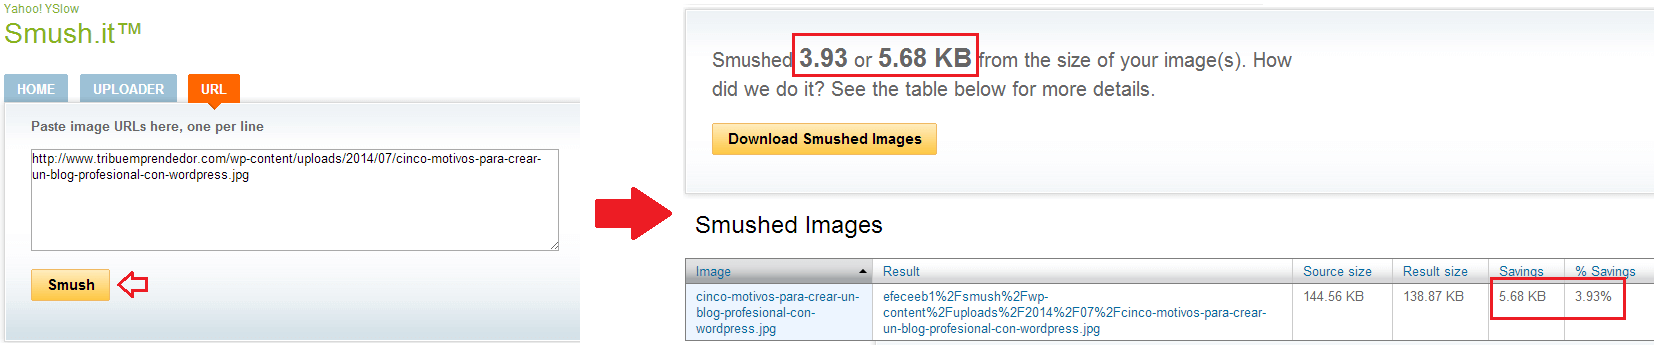 reducir-tamano-peso-imagenes-con-smush-it-aumentar-velocidad-de-carga-sitio-wordpress-2